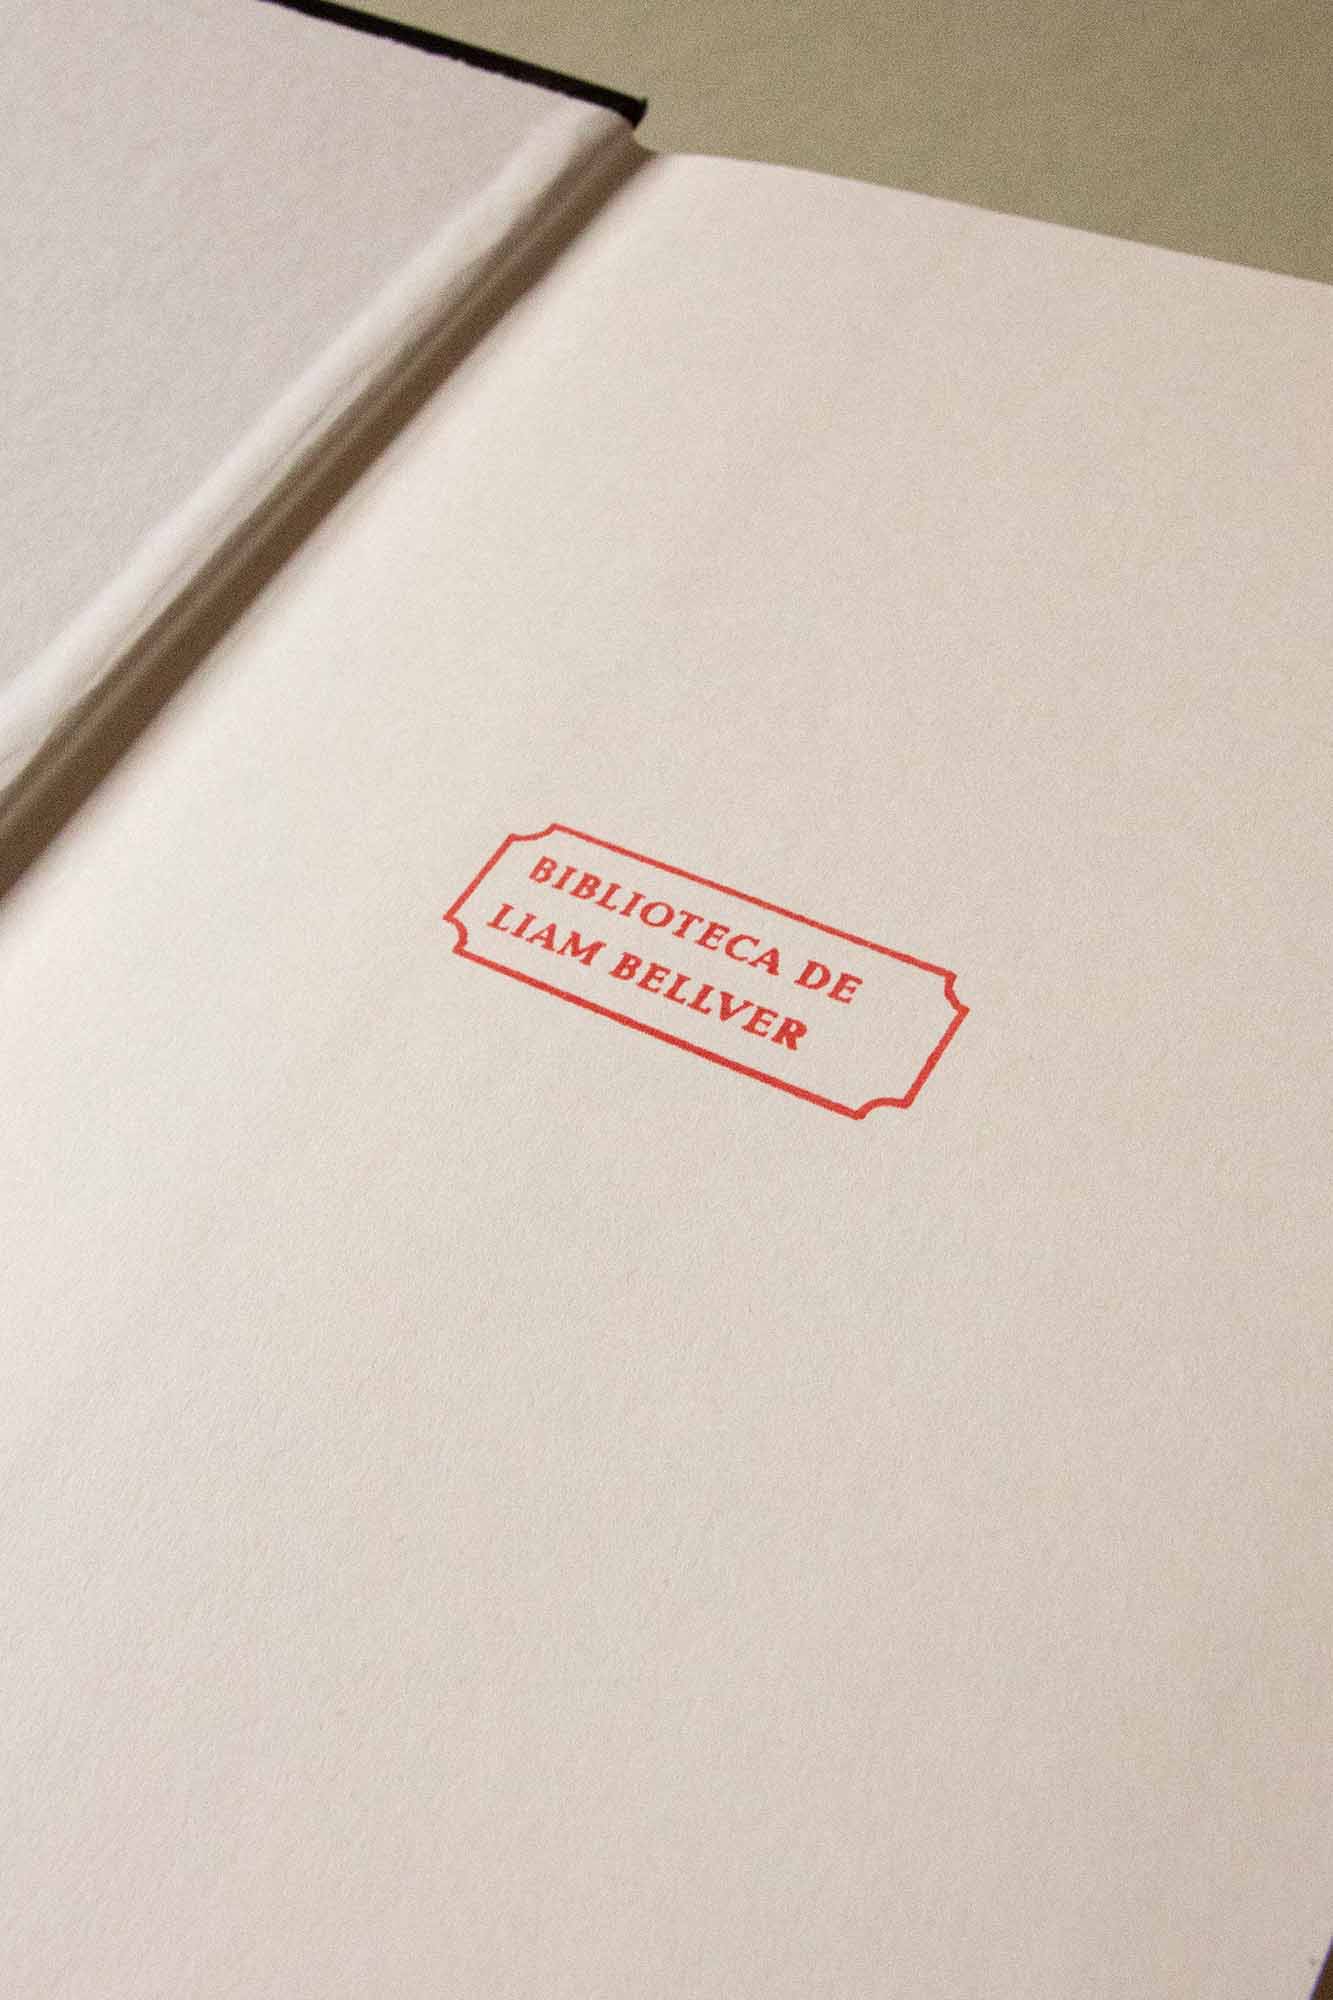 Portadilla de libro estampada con una etiqueta con el nombre de su proprietario